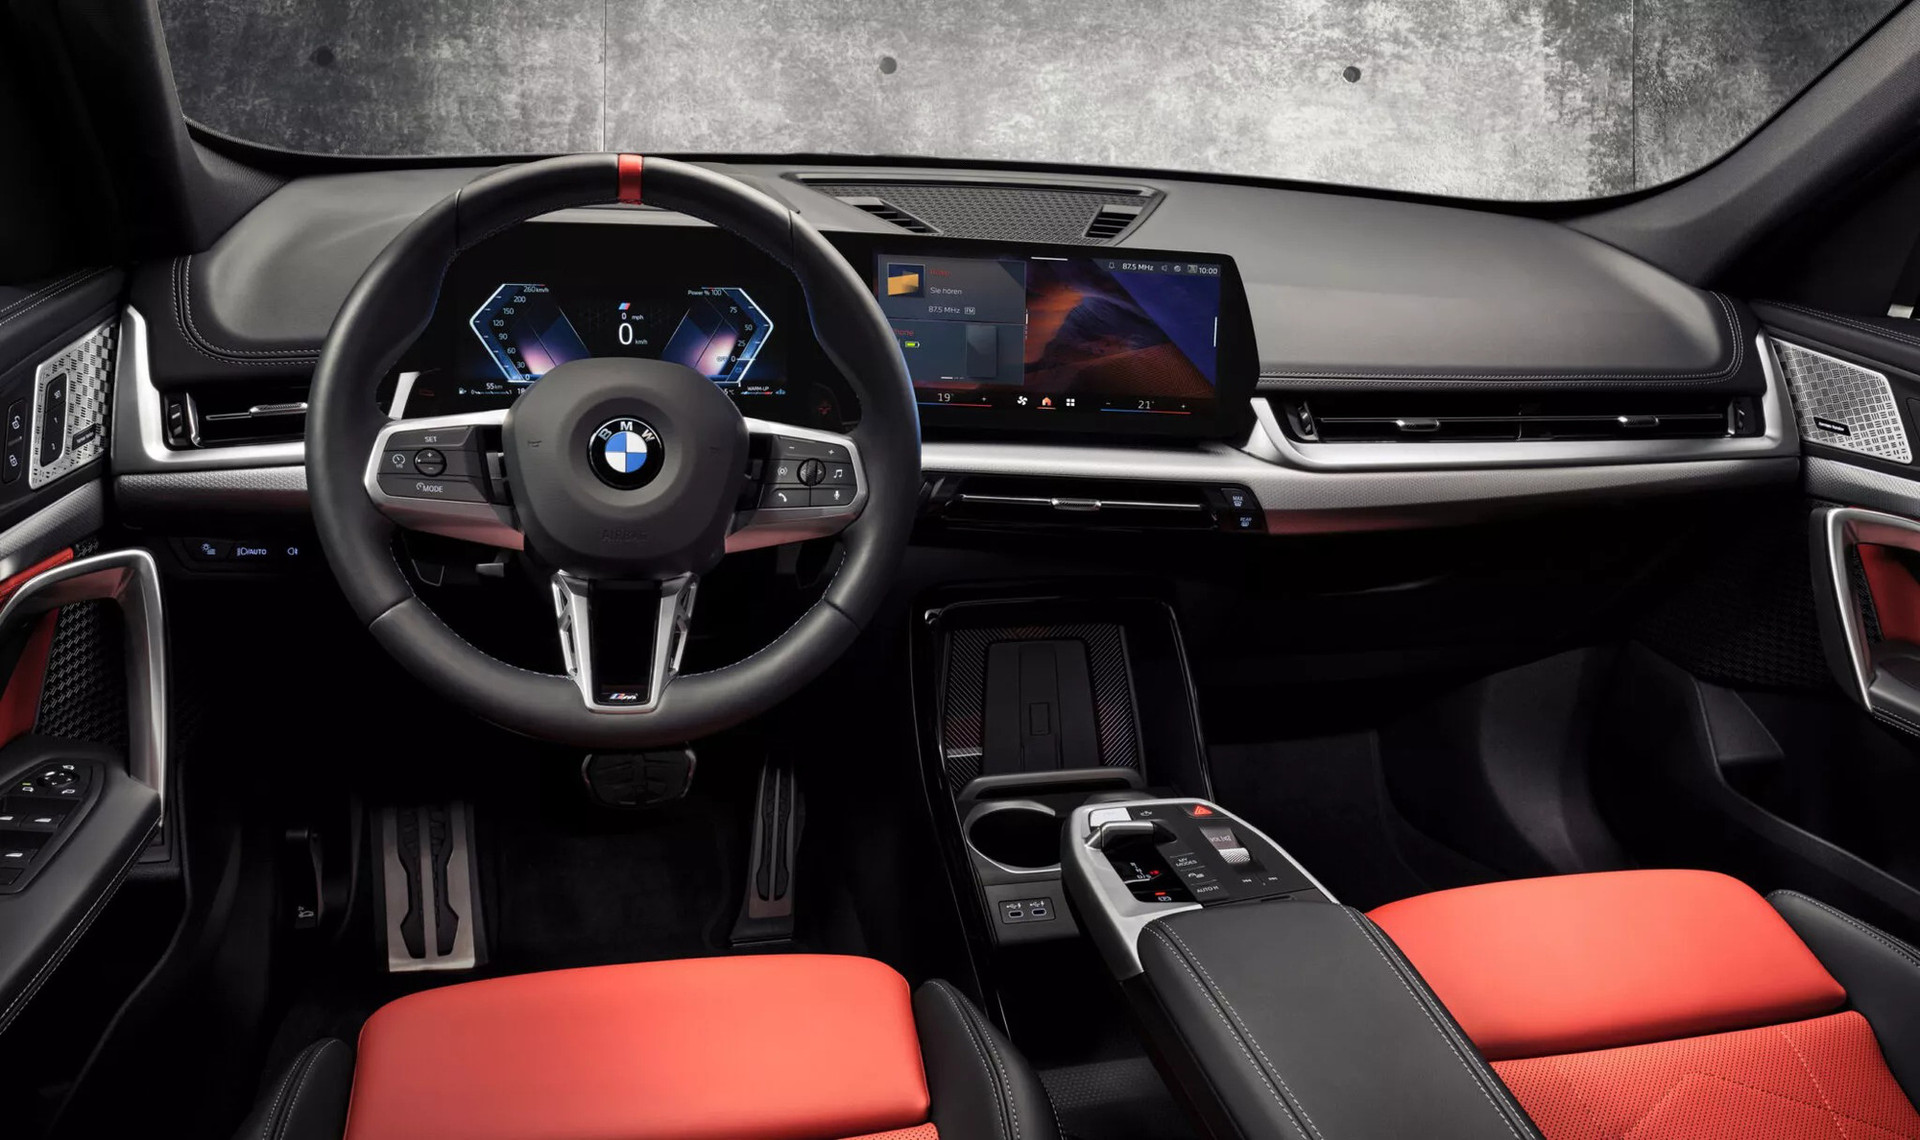 Với một dòng xe BMW có tầm giá dưới 1 tỉ, nội thất như ảnh (tham khảo từ X1) thật sự rất đáng quan tâm - Ảnh: BMW